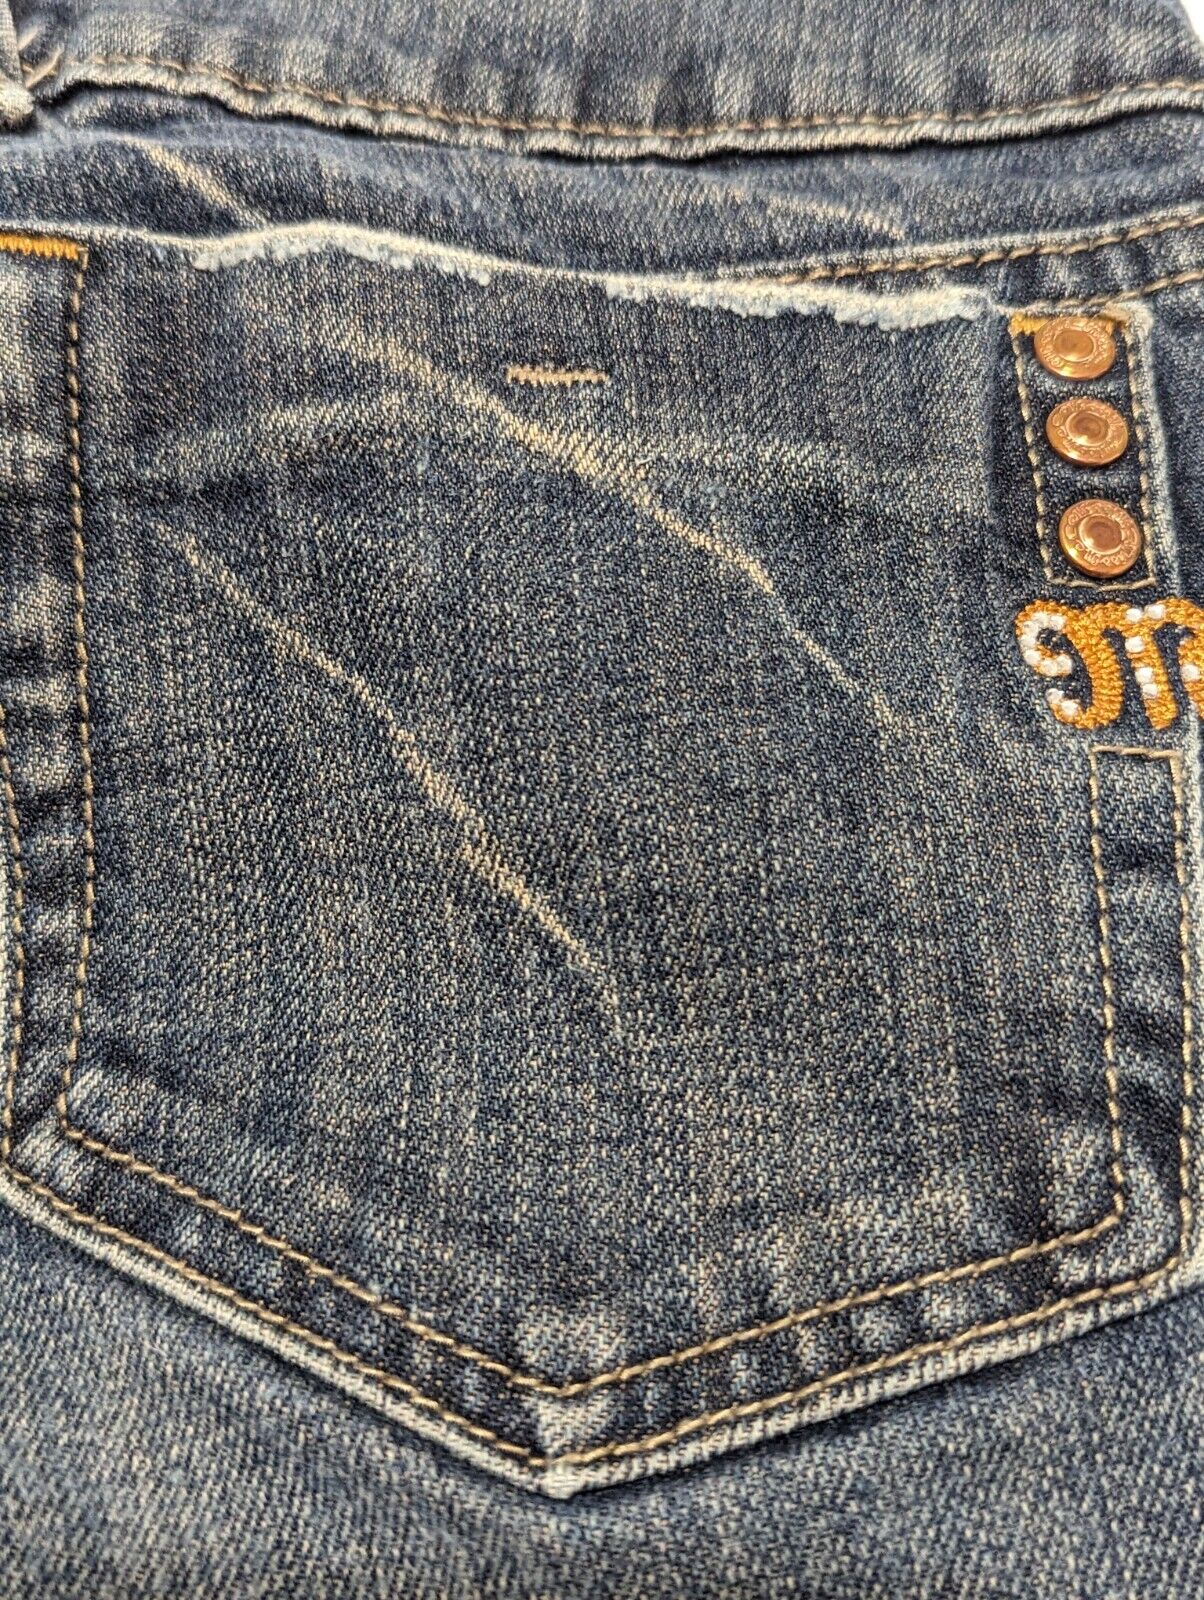 Miss Me Bootcut Blue Jeans Sz 26 Medium Wash Stre… - image 4